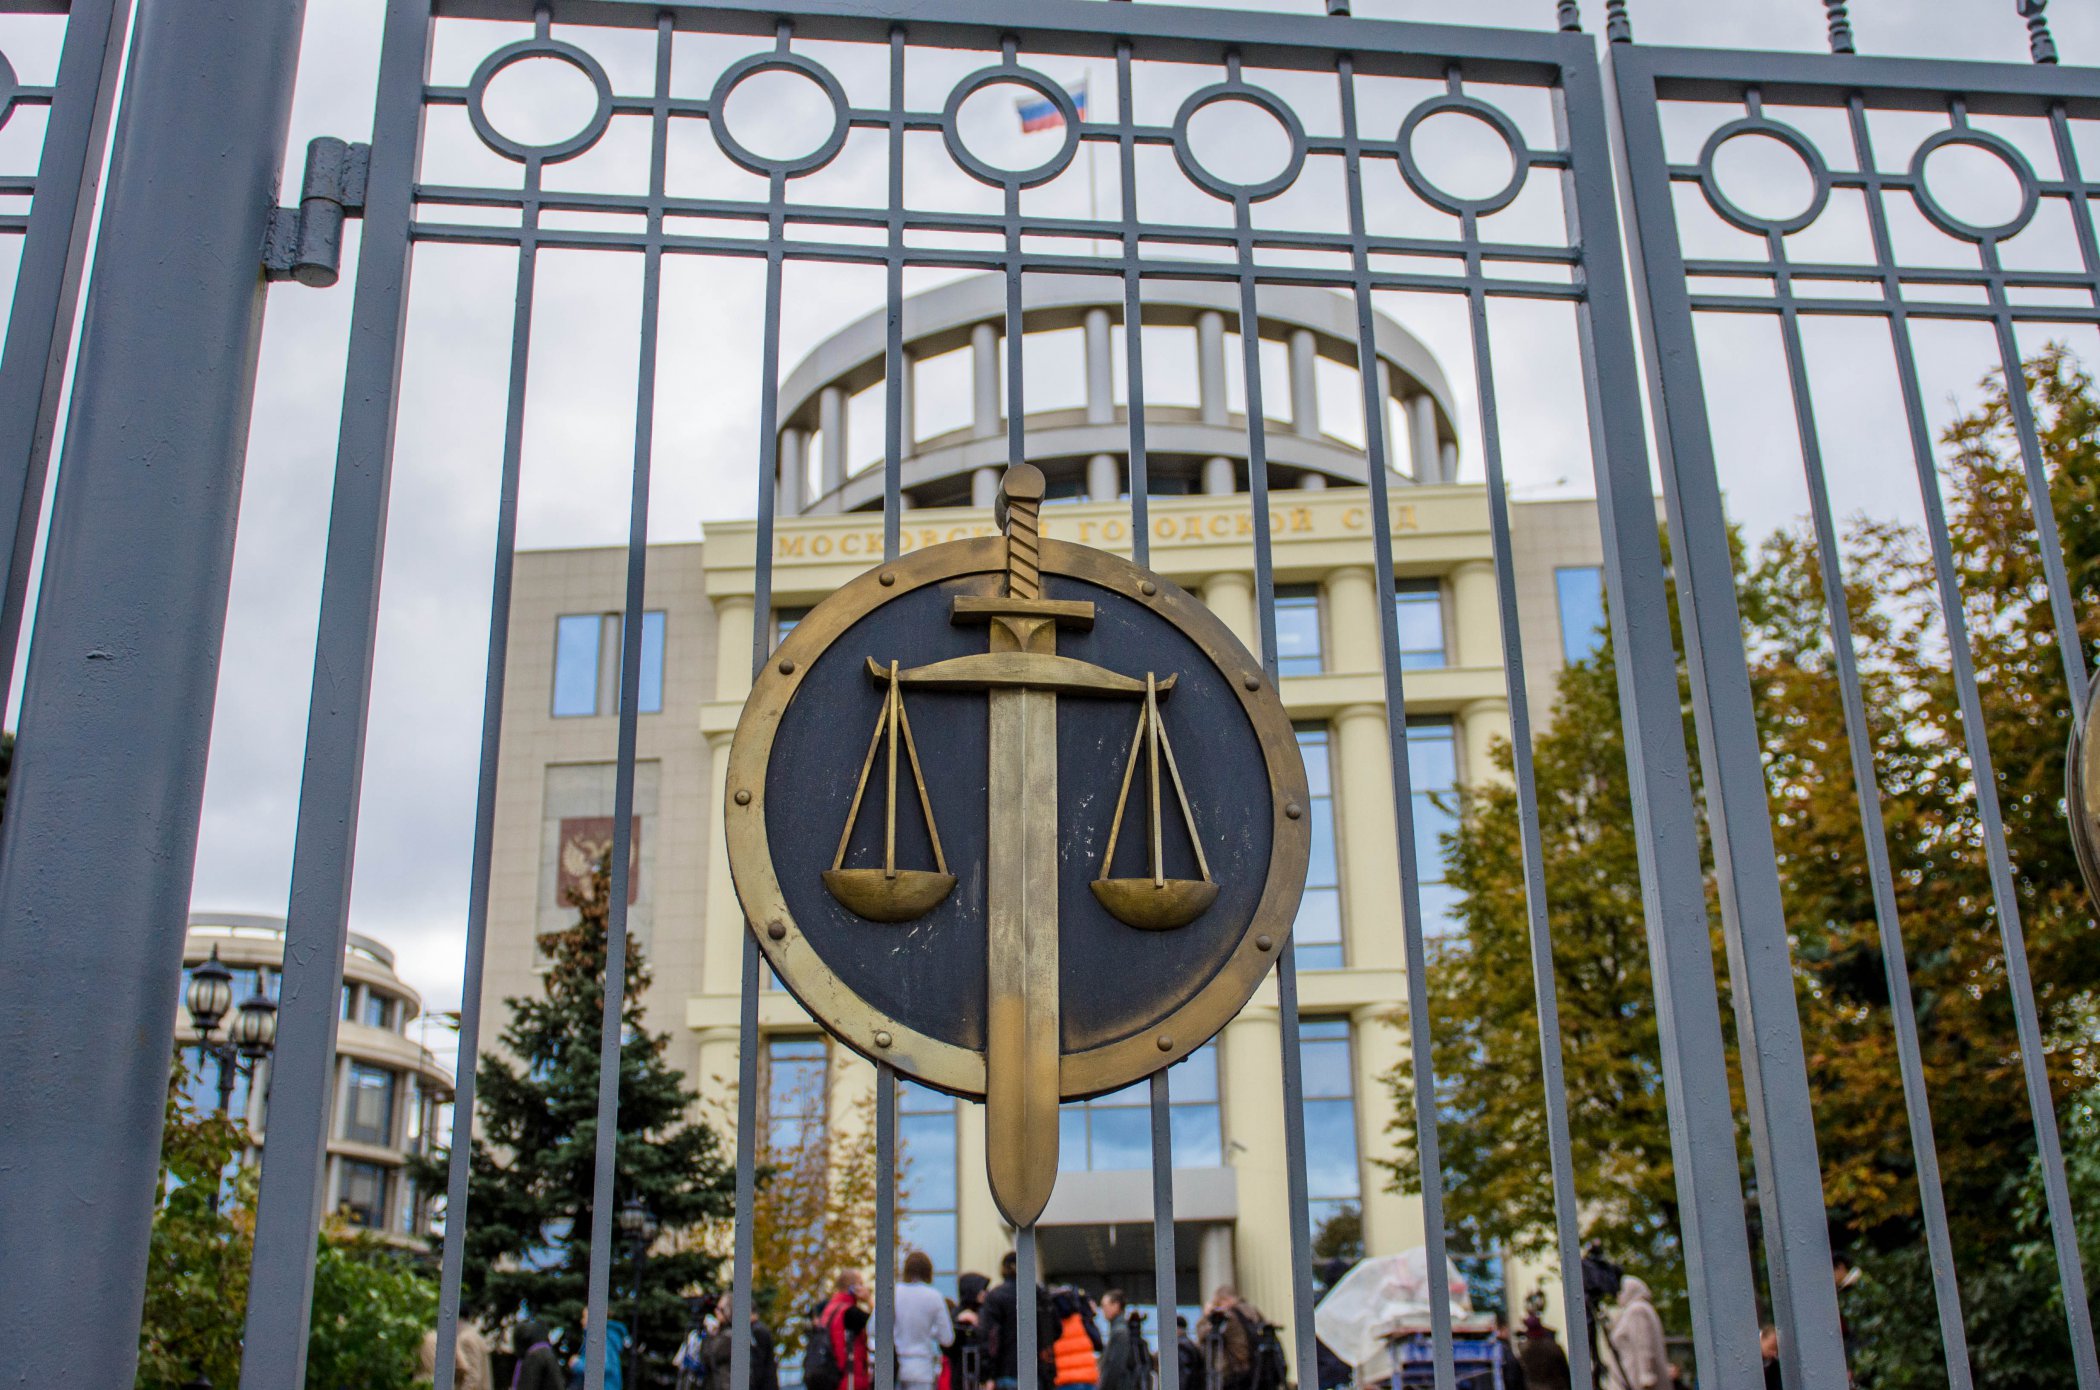 Суд над Сущенком продовжиться 28 березня